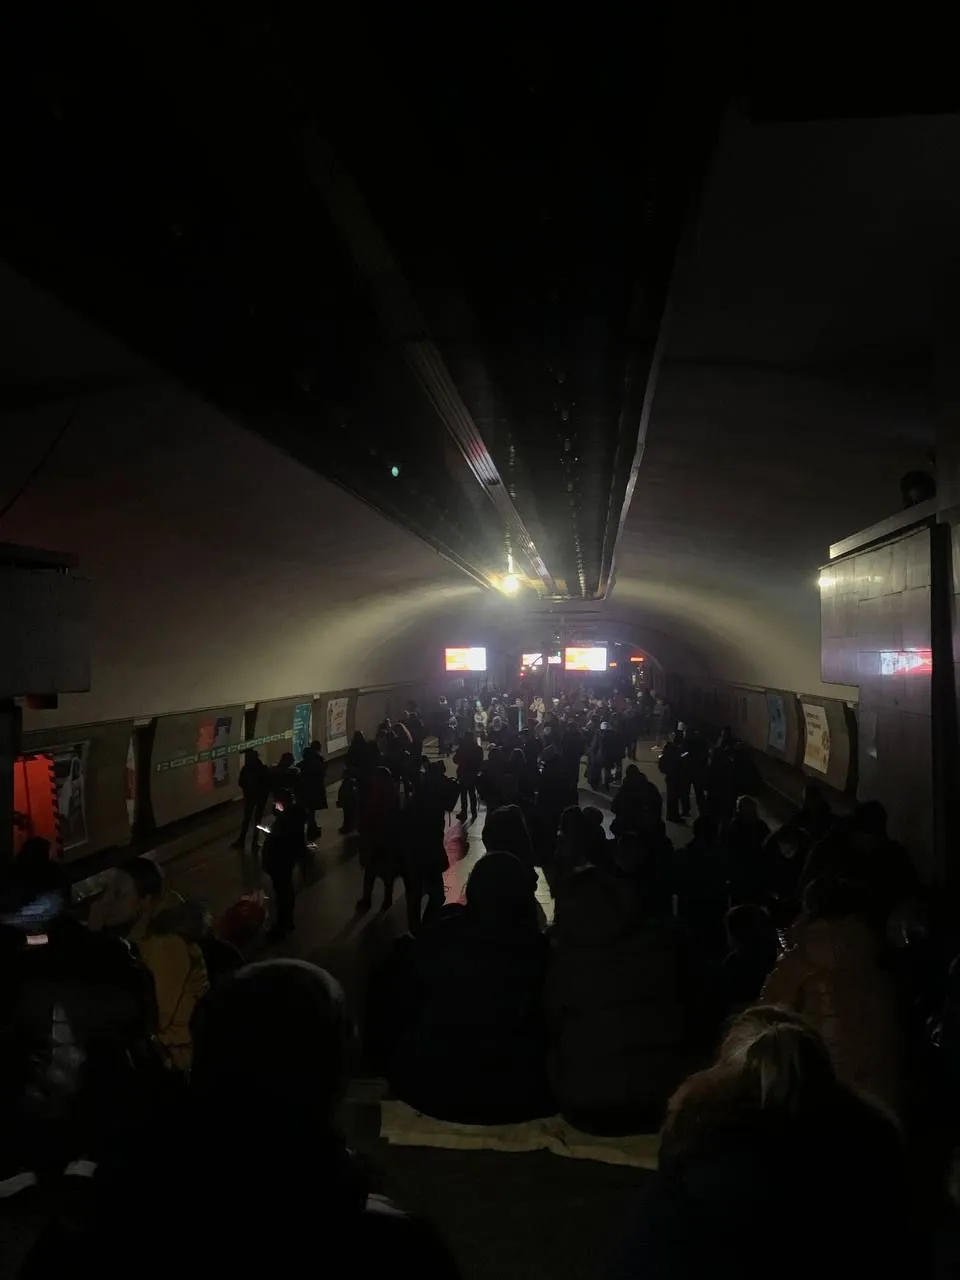  Київське метро під час ракетної атаки